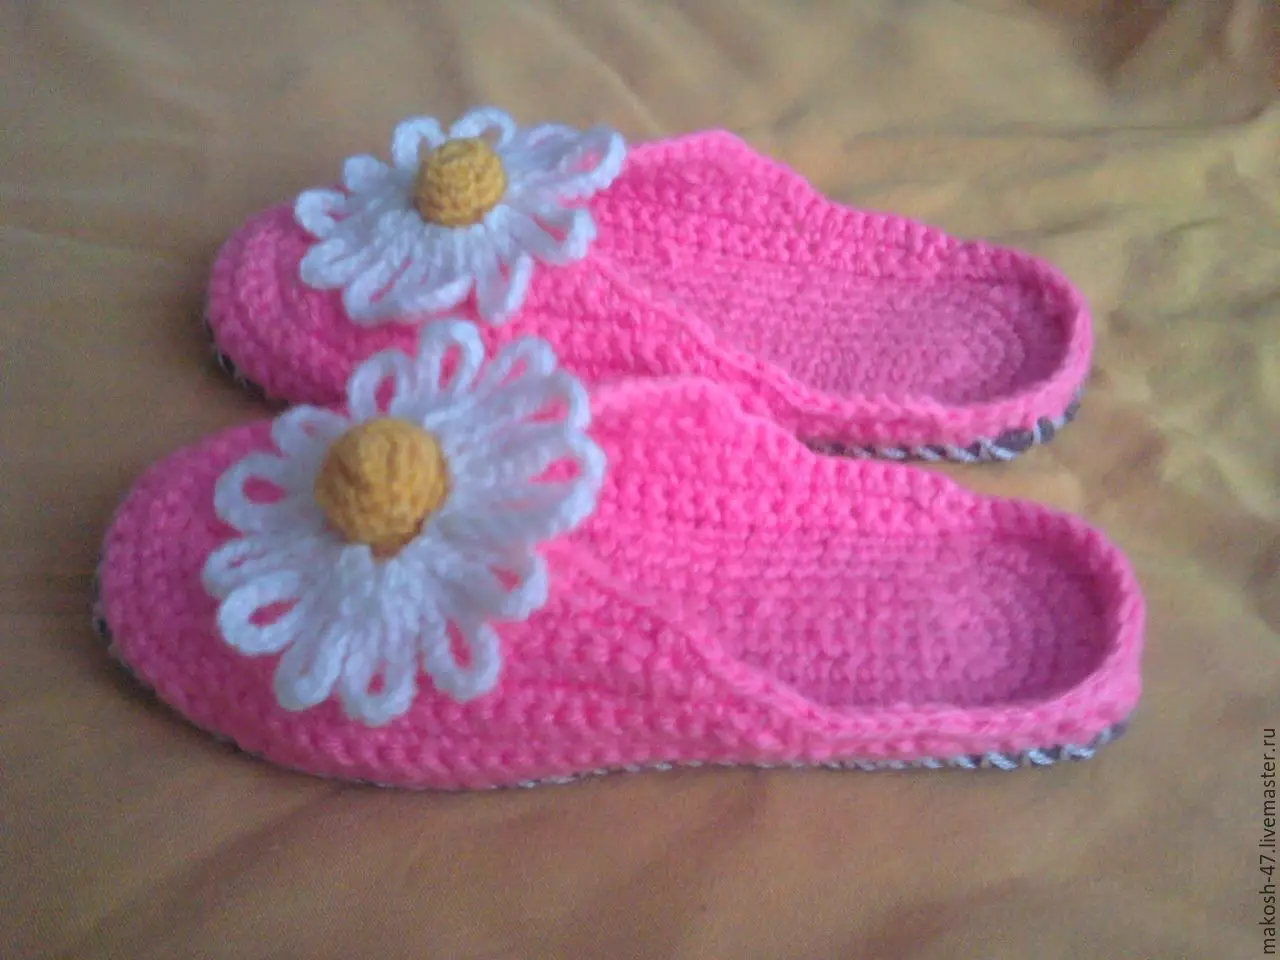 በ ከውስጡ ብቸኛ ላይ እንደመሠረቱ የሚያደርስበትን (36 ፎቶዎች): slippers slippers, ከውስጡ የመጡ ሴቶች እና ለልጆች በቤት chamomile ሞዴሎች 15023_36